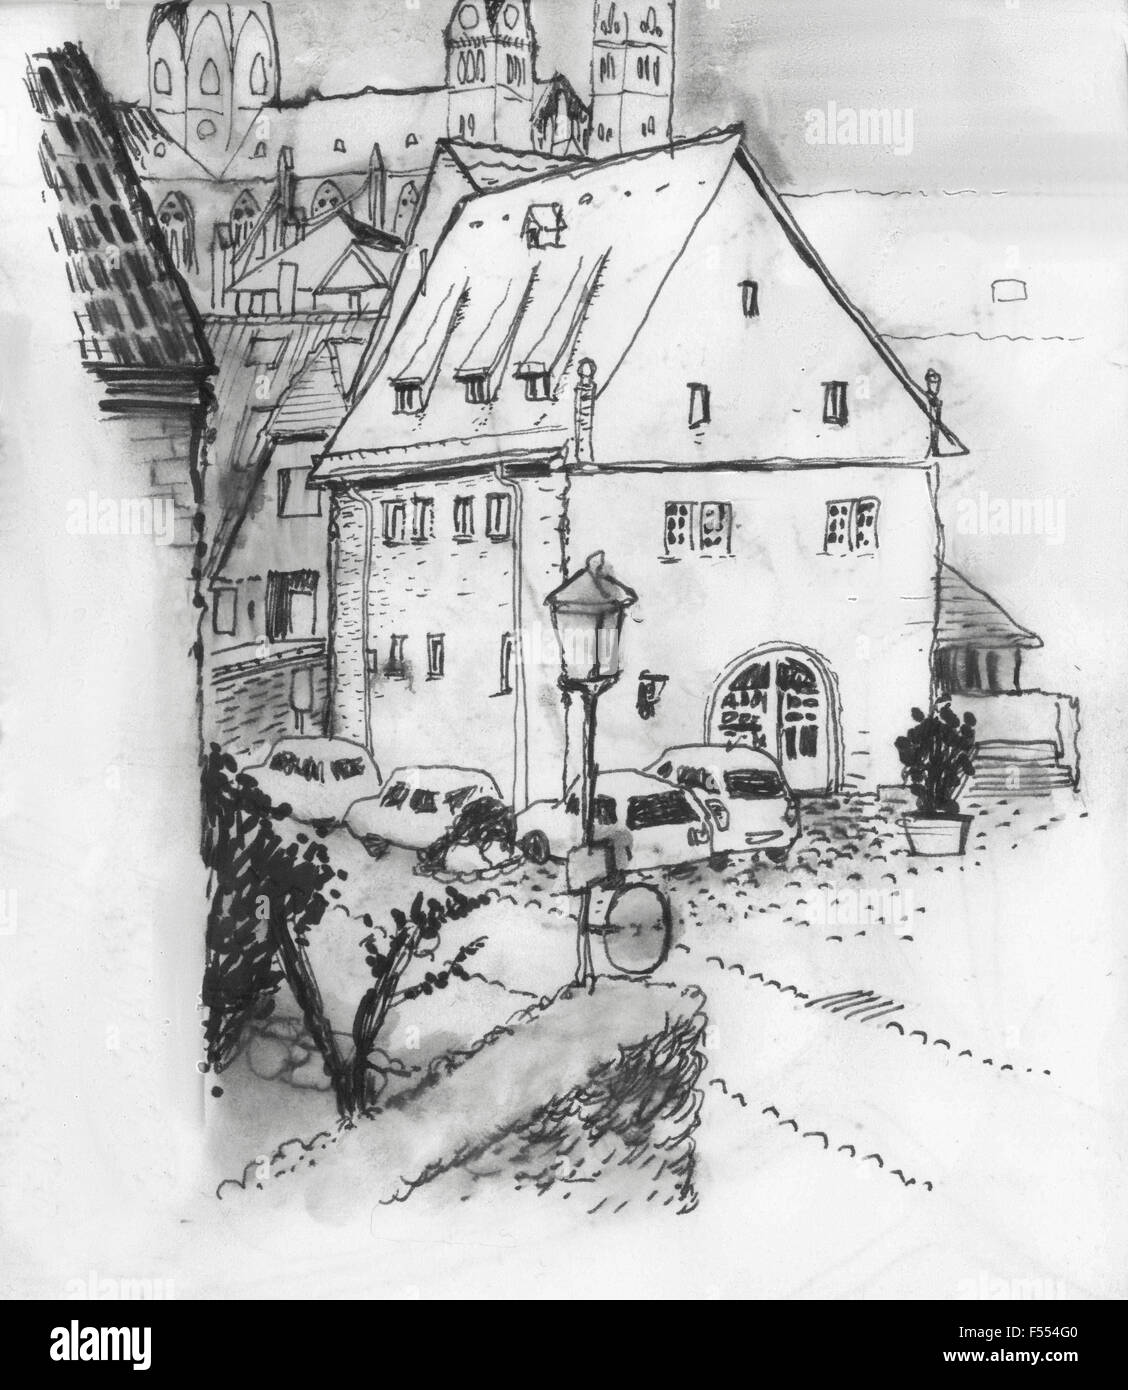 Image d'illustration de maisons en ville Banque D'Images